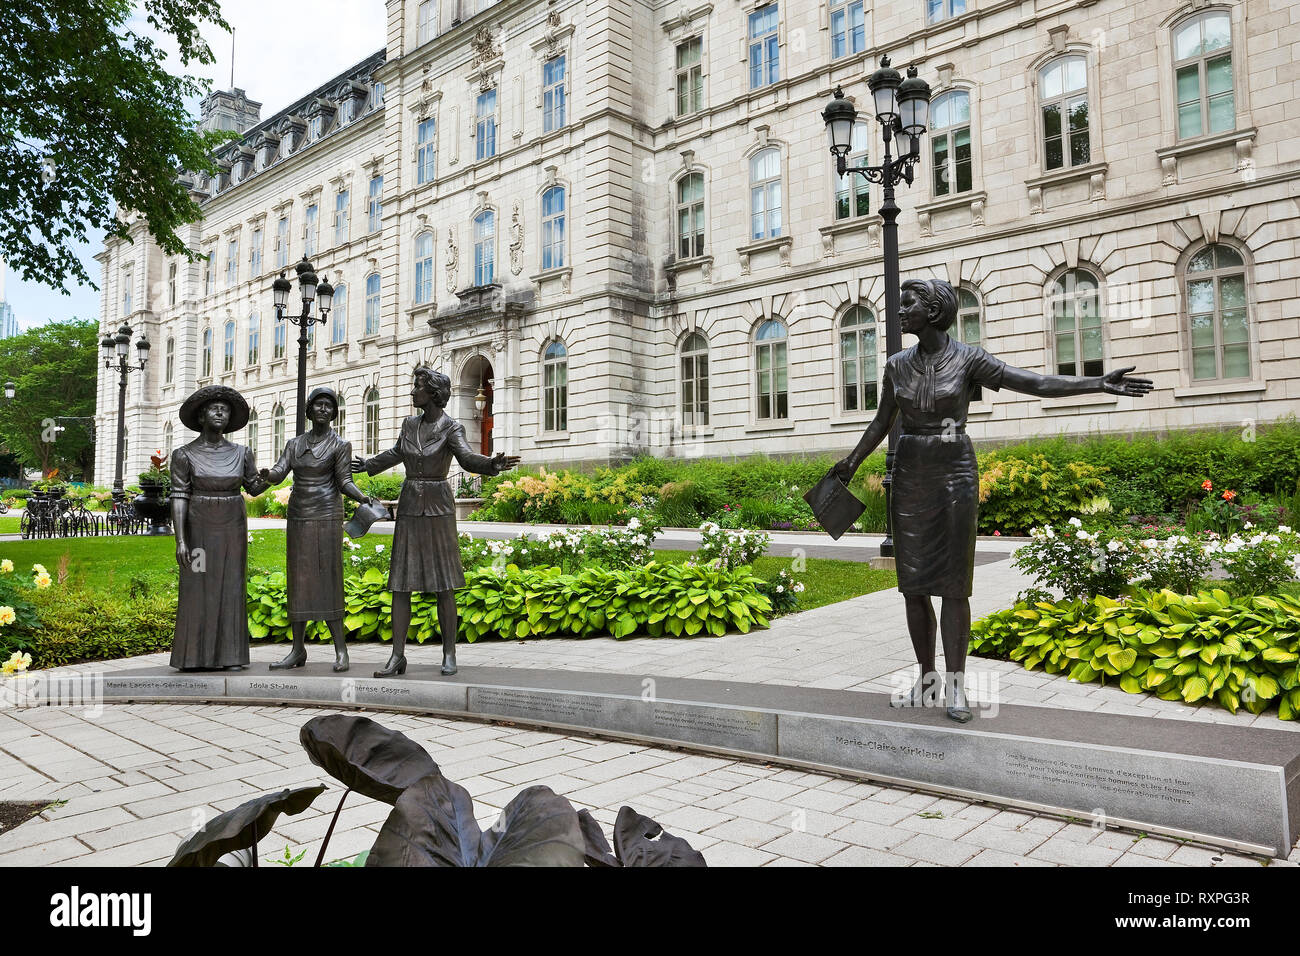 Am südlichen Eingang des Québecer Nationalversammlung, die 'Monument in Hommage an die Frauen in der Politik" von Bildhauer Jules Lasalle ehrt 4 Frauen, die eine wichtige Rolle bei der Förderung der Rechte der Frauen in Quebec, Quebec City, Quebec, Kanada gespielt Stockfoto